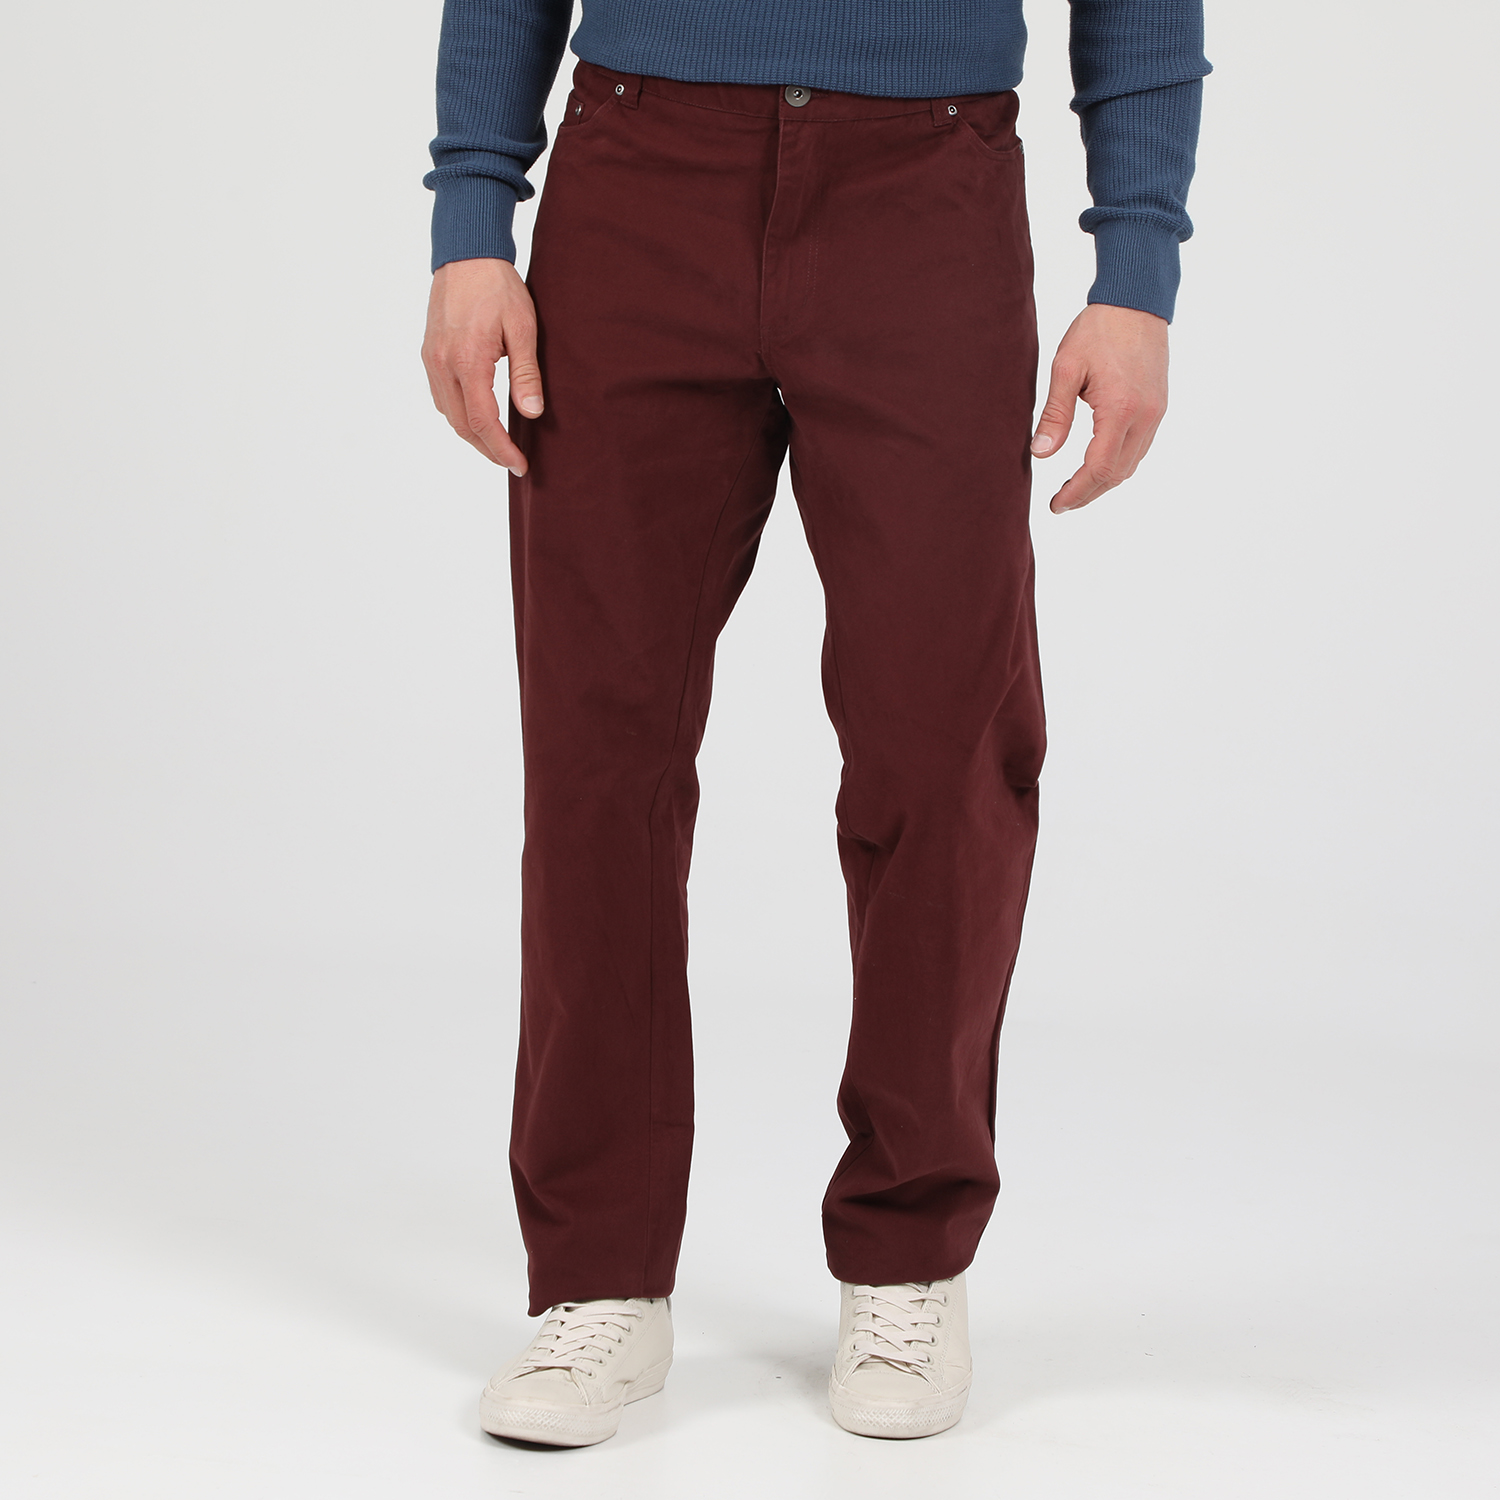 Ανδρικά/Ρούχα/Παντελόνια/Ισια Γραμμή MARTIN & CO - Ανδρικό παντελόνι MARTIN & CO 5-POCKET μπορντό